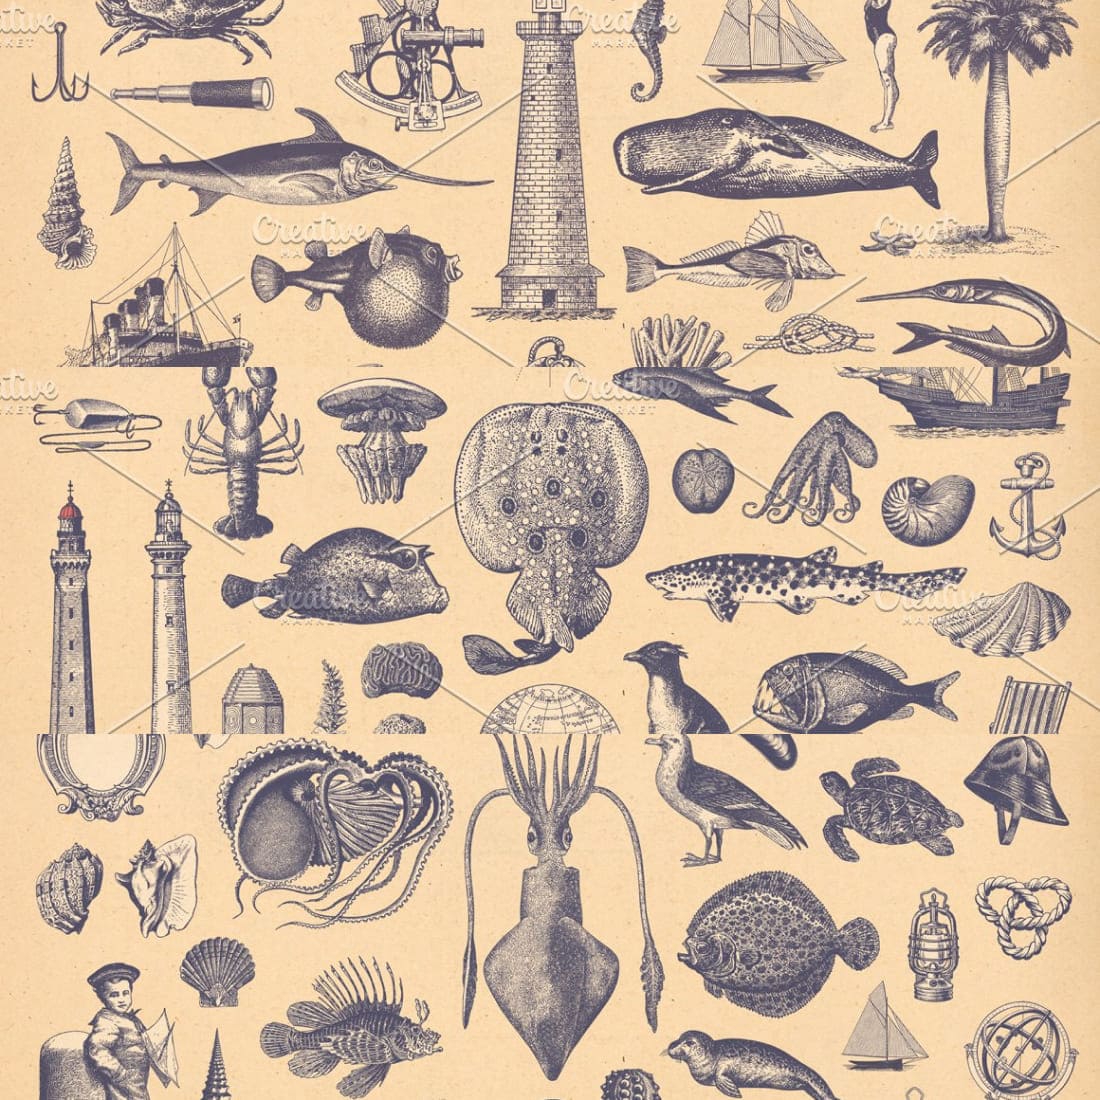 100 vintage nautical illustrations.